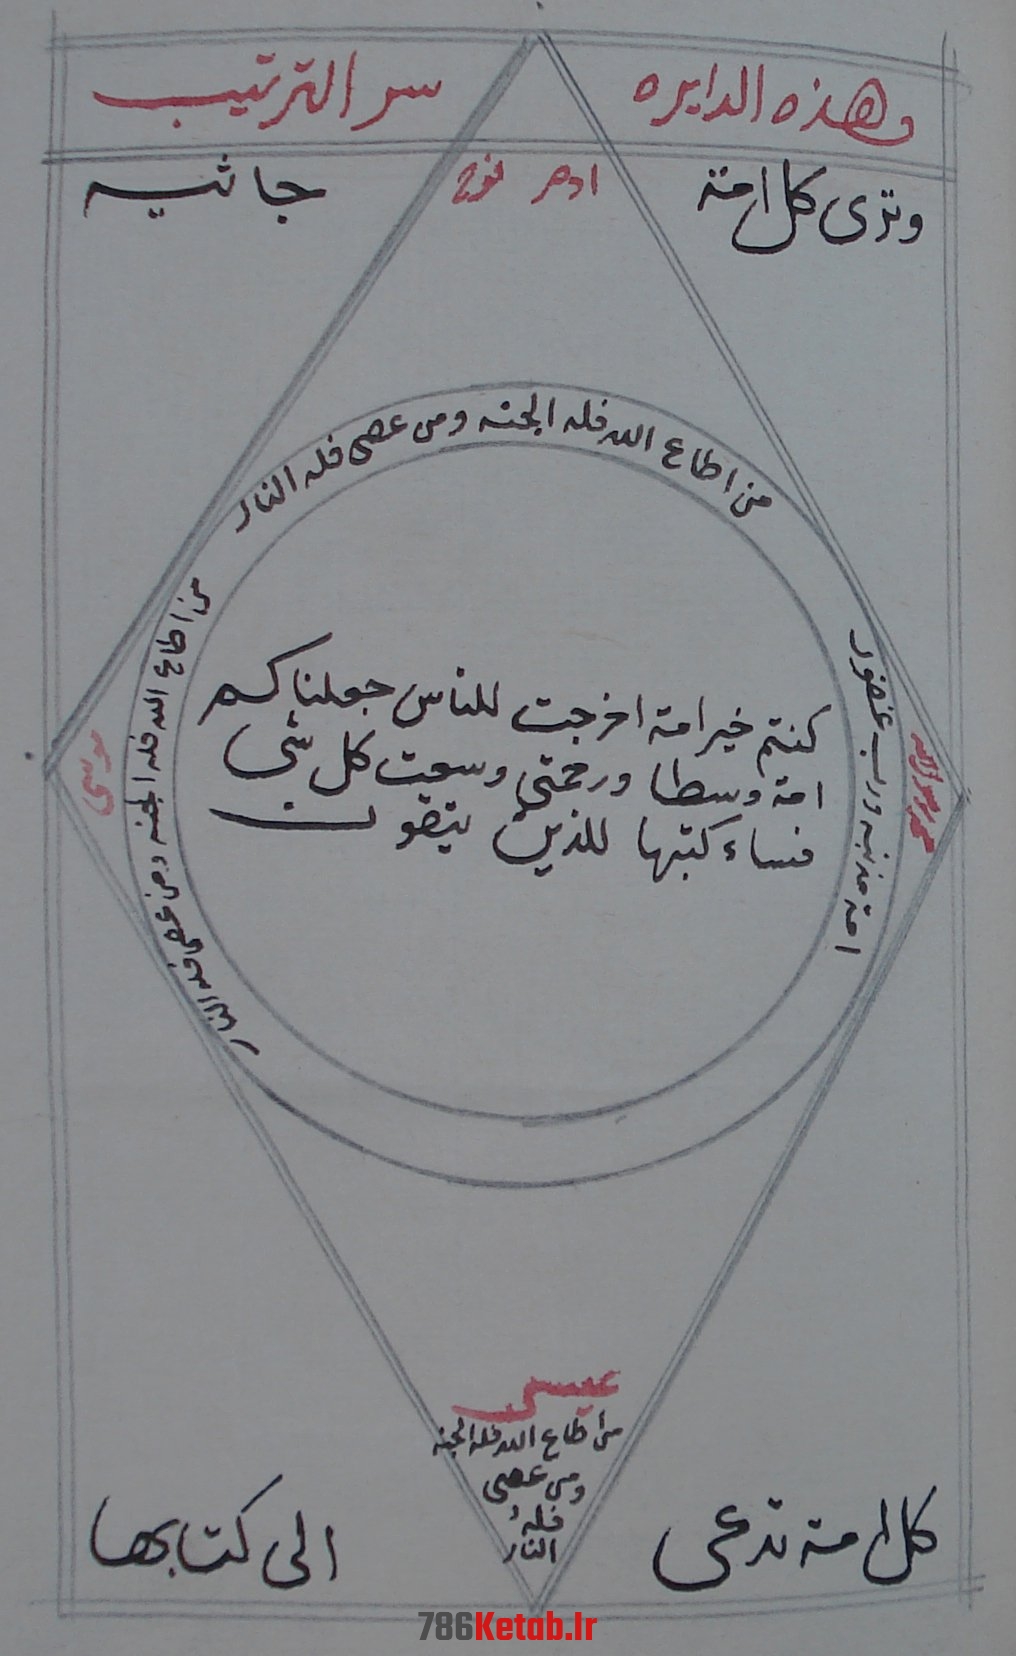 مخطوطة منسوبة للامام علي ابن ابي طالب